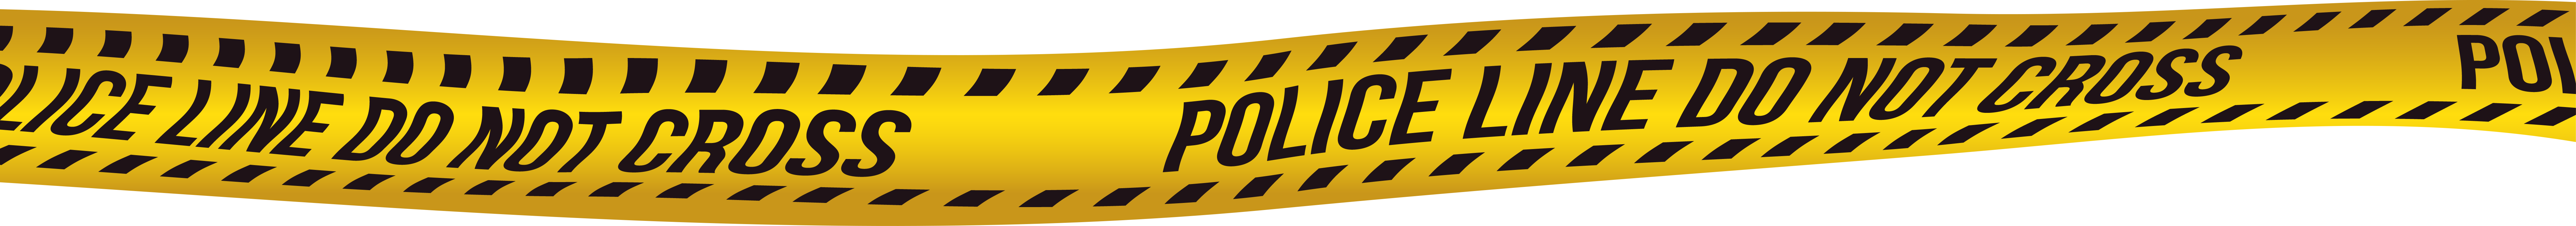 شريط الشرطة الأصفر بابوا نيو غينيا